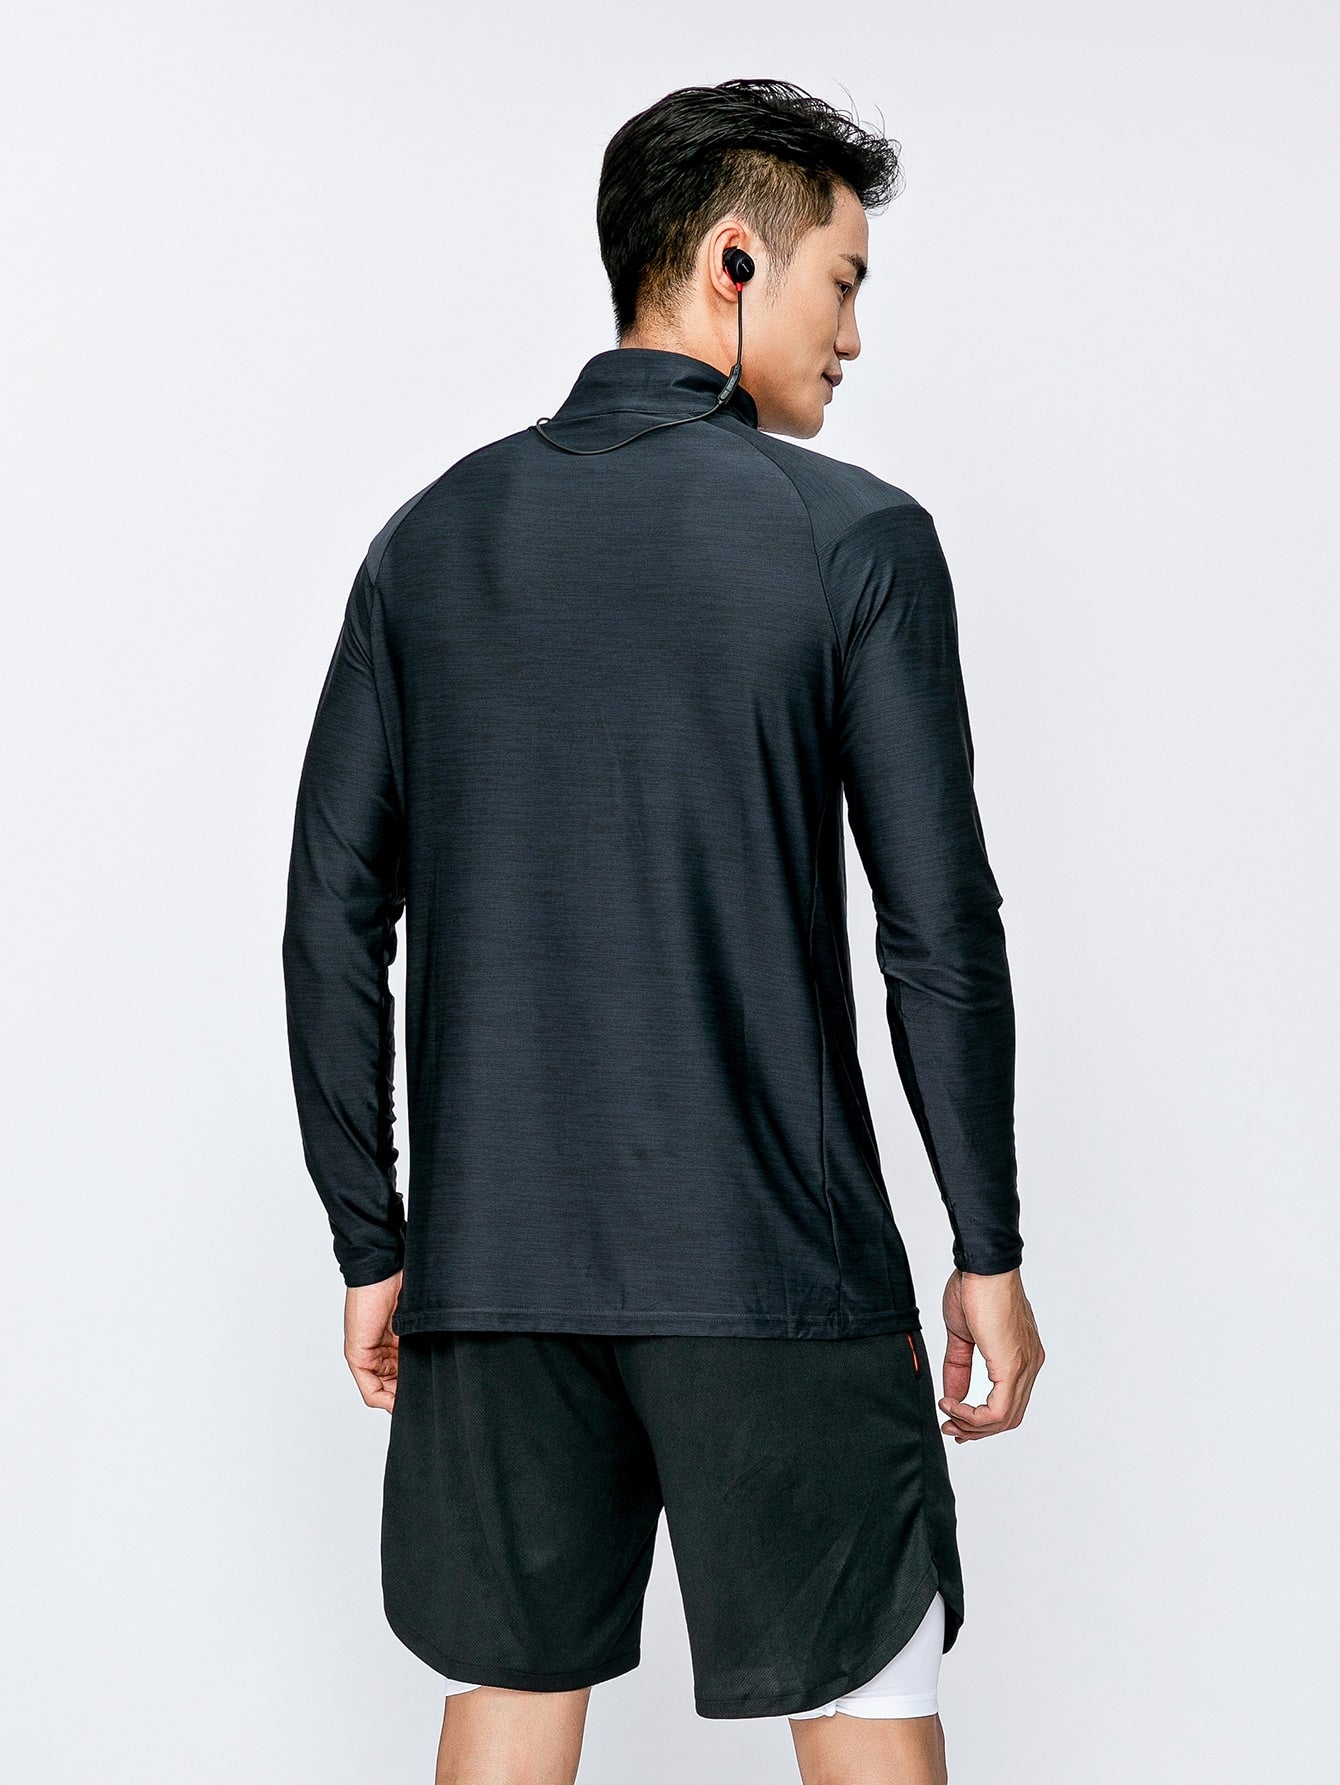 Men Quarter Zipper Yoga  Sweatshirt - Yoga Top for Men Yoga and Meditation Products - Personal Hour